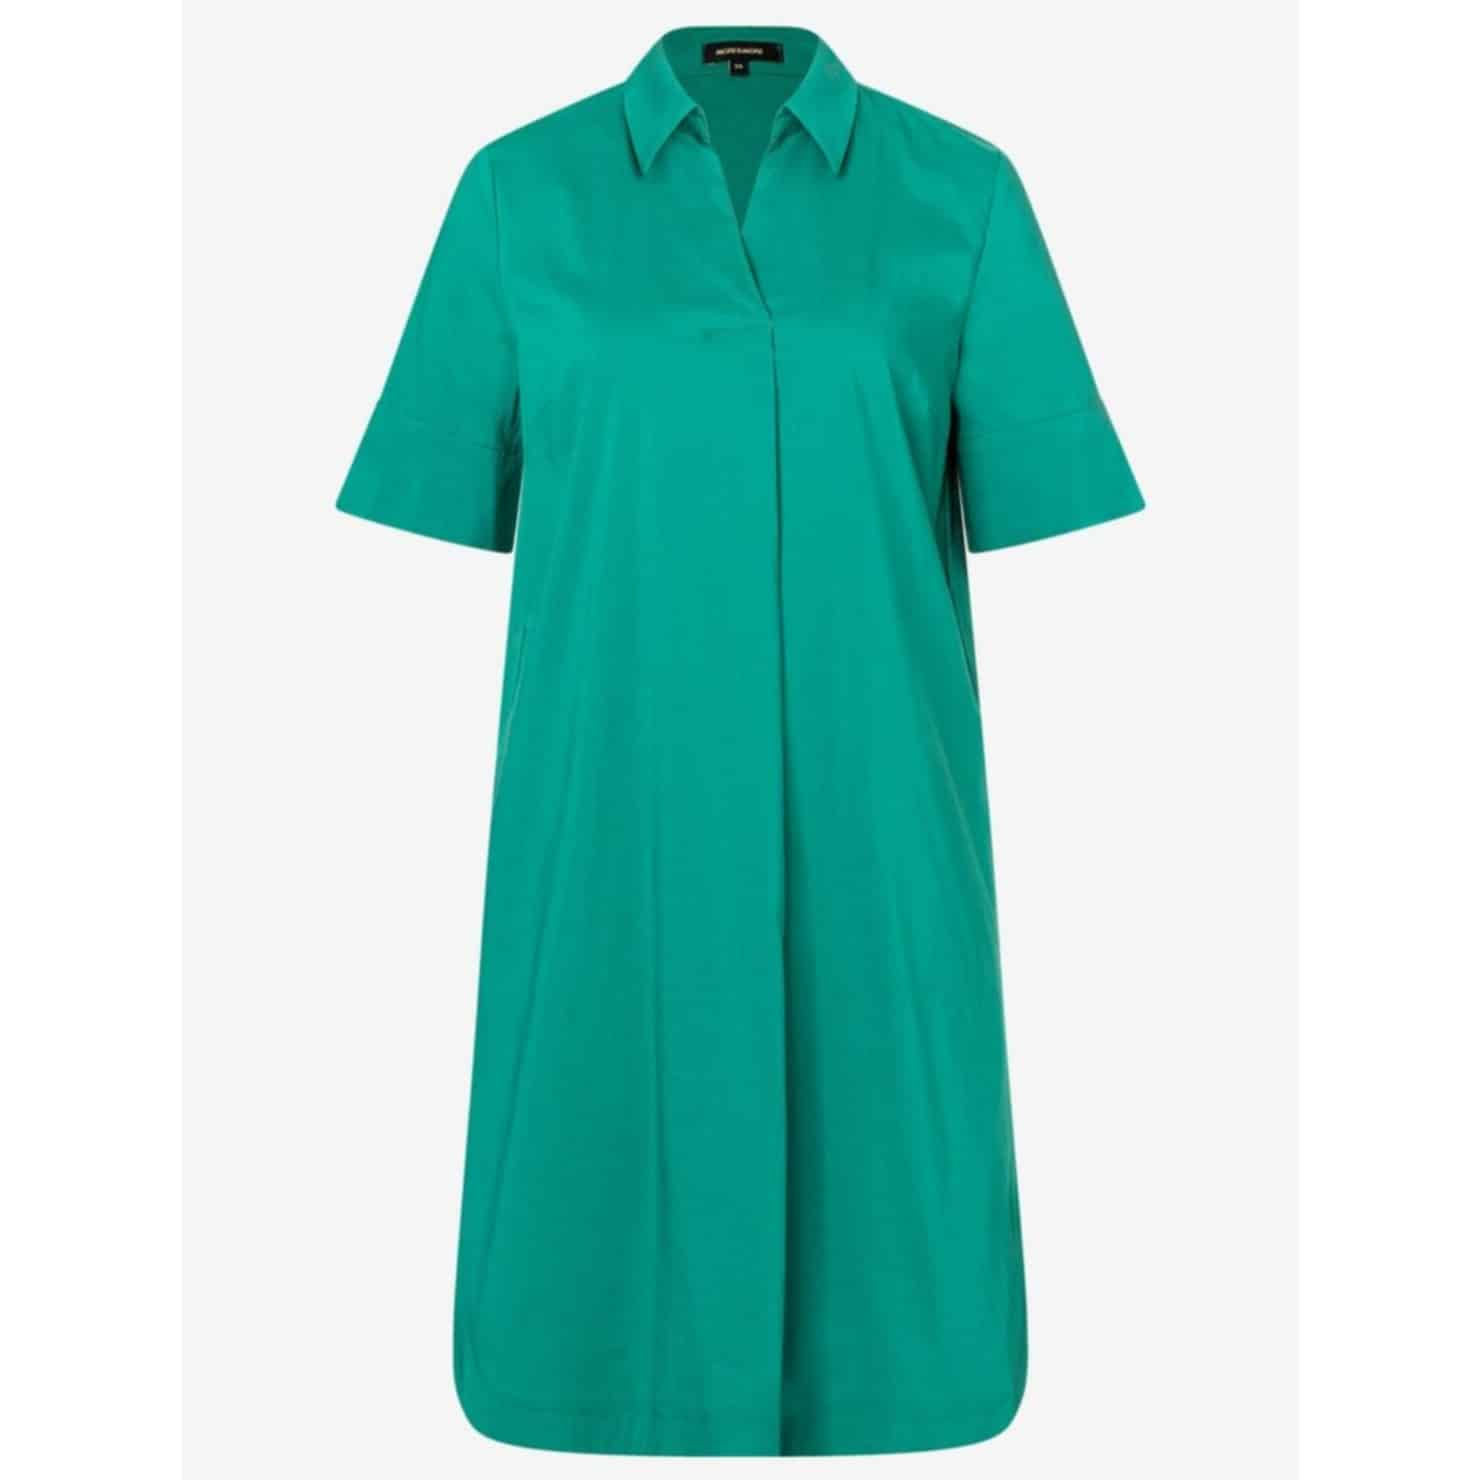 Hemdblusenkleid von MORE & MORE in dunklem grün, lässiger Schnitt, Sommerkleid oder Tunika